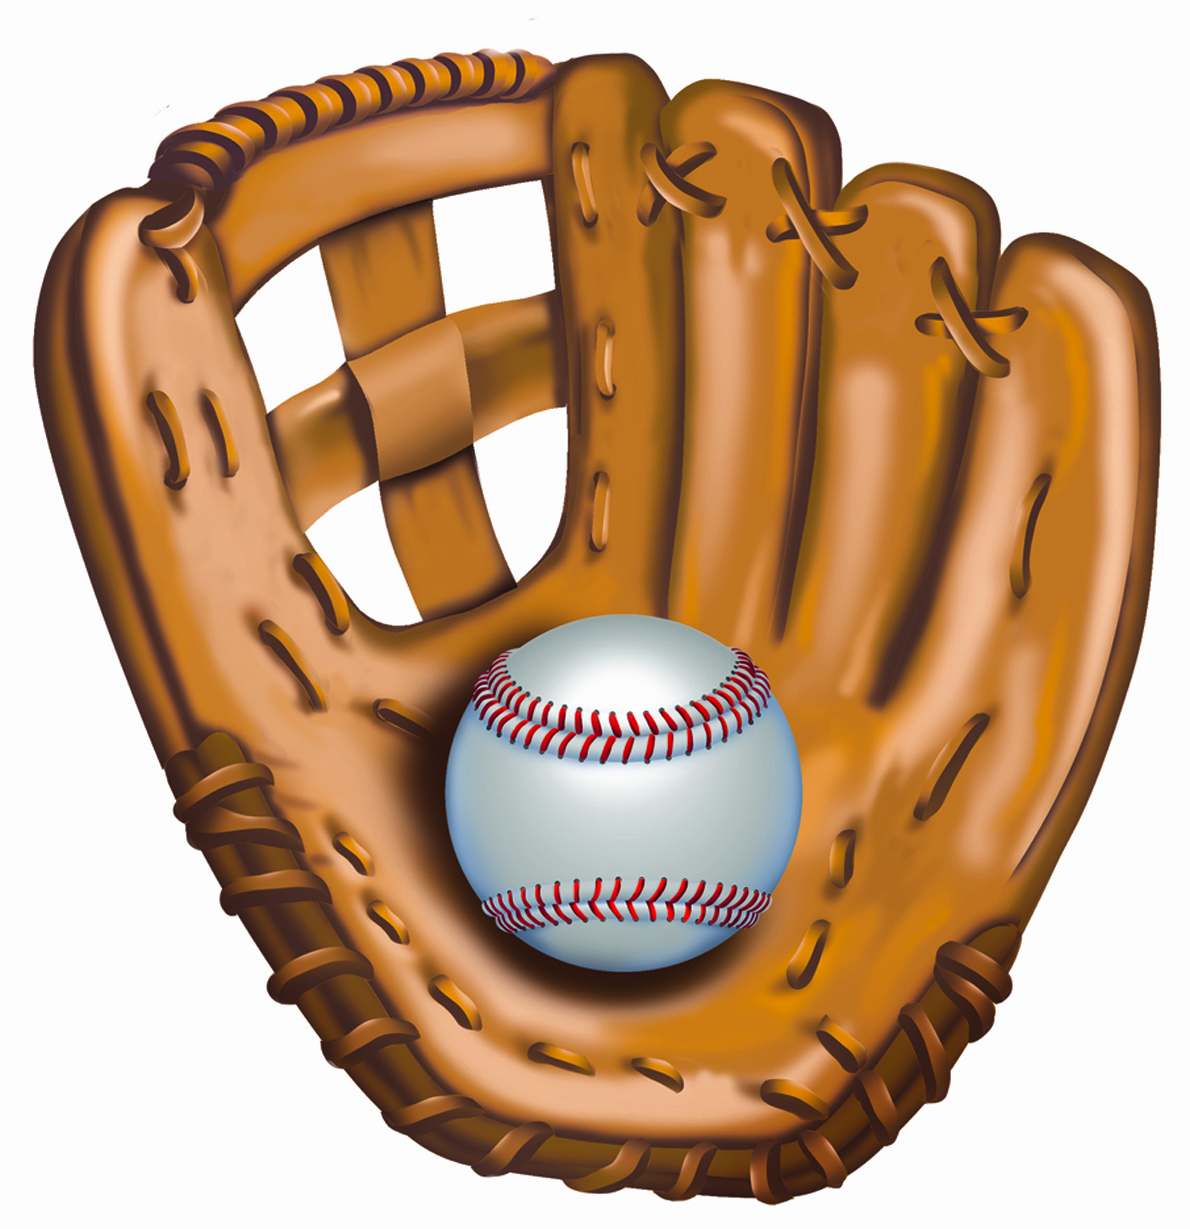 Cartoon baseball glove clipart